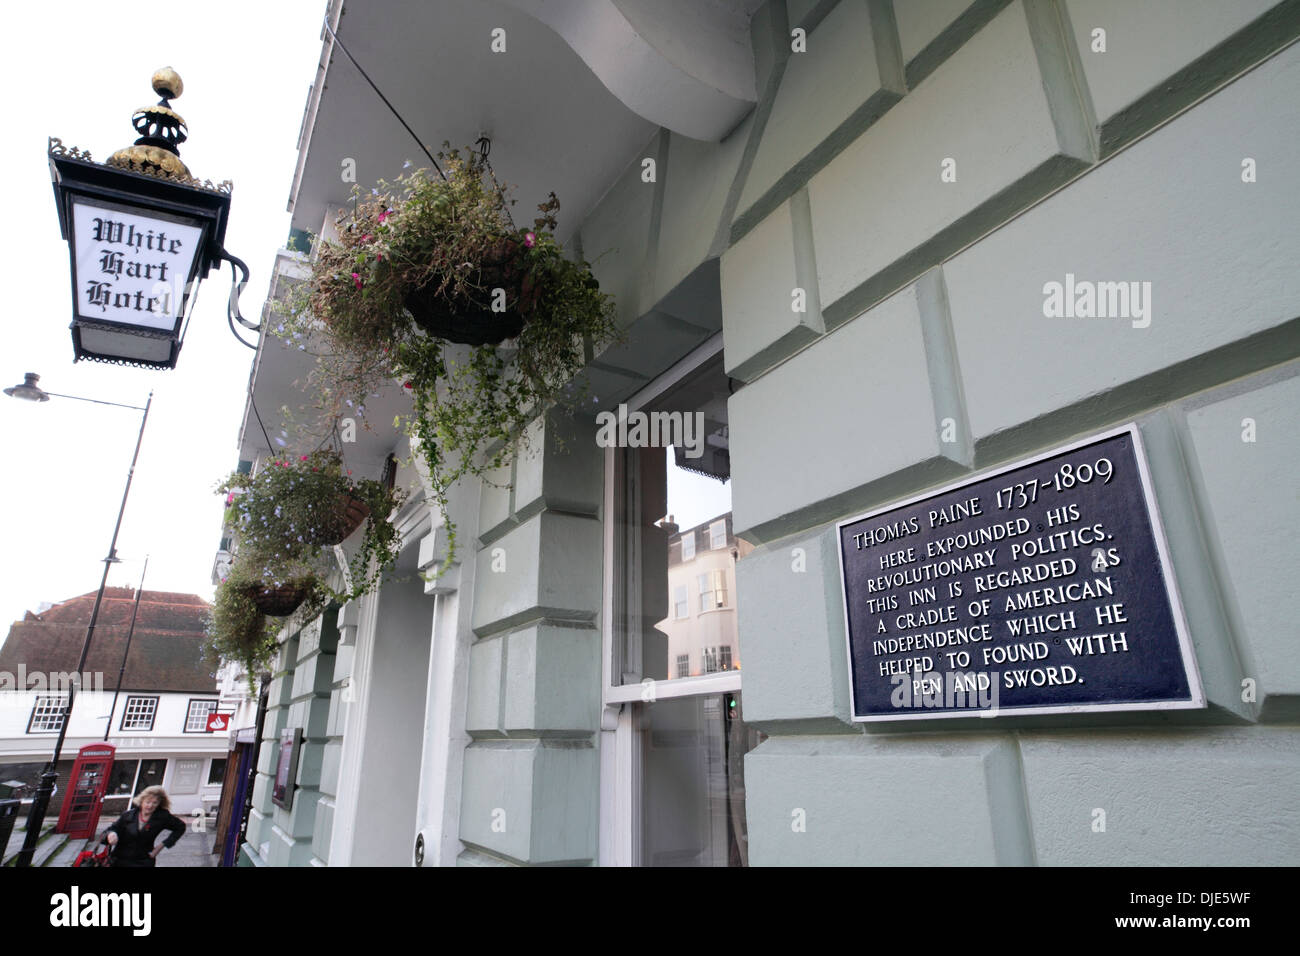 Inscription commémorant Tom Paine sur l'extérieur de The White Hart Hotel, High Street, Lewes, East Sussex. Banque D'Images